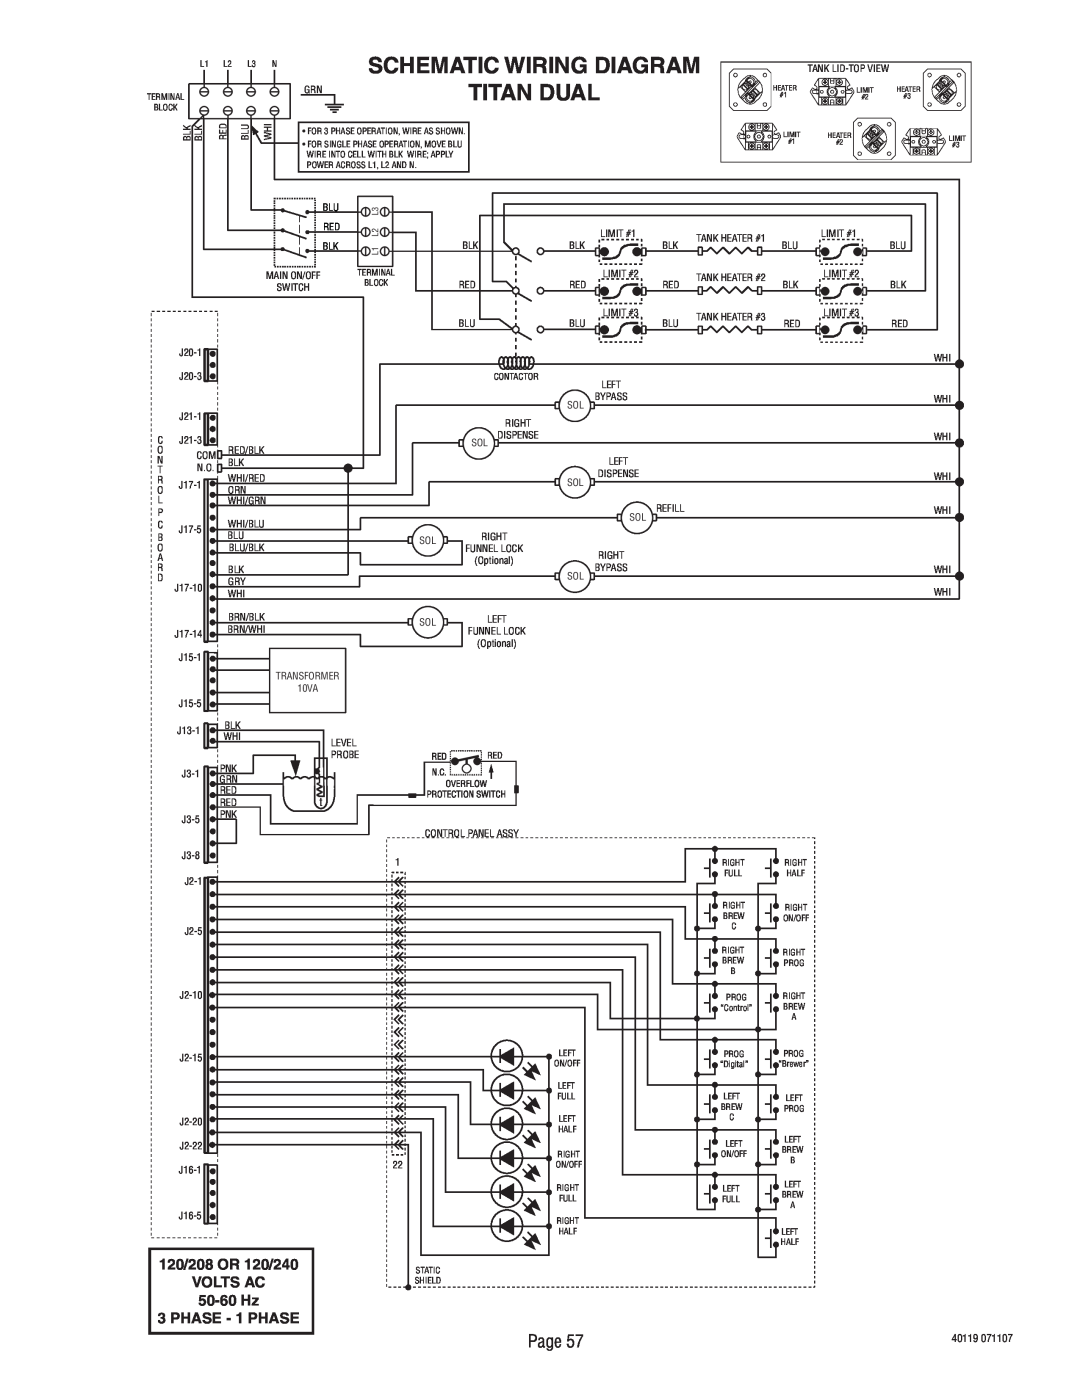 Bunn TITAN DUAL manual Schematic Wiring Diagram, Titan Dual, 120/208 OR 120/240, 50-60 Hz, PHASE - 1 PHASE, Volts Ac 